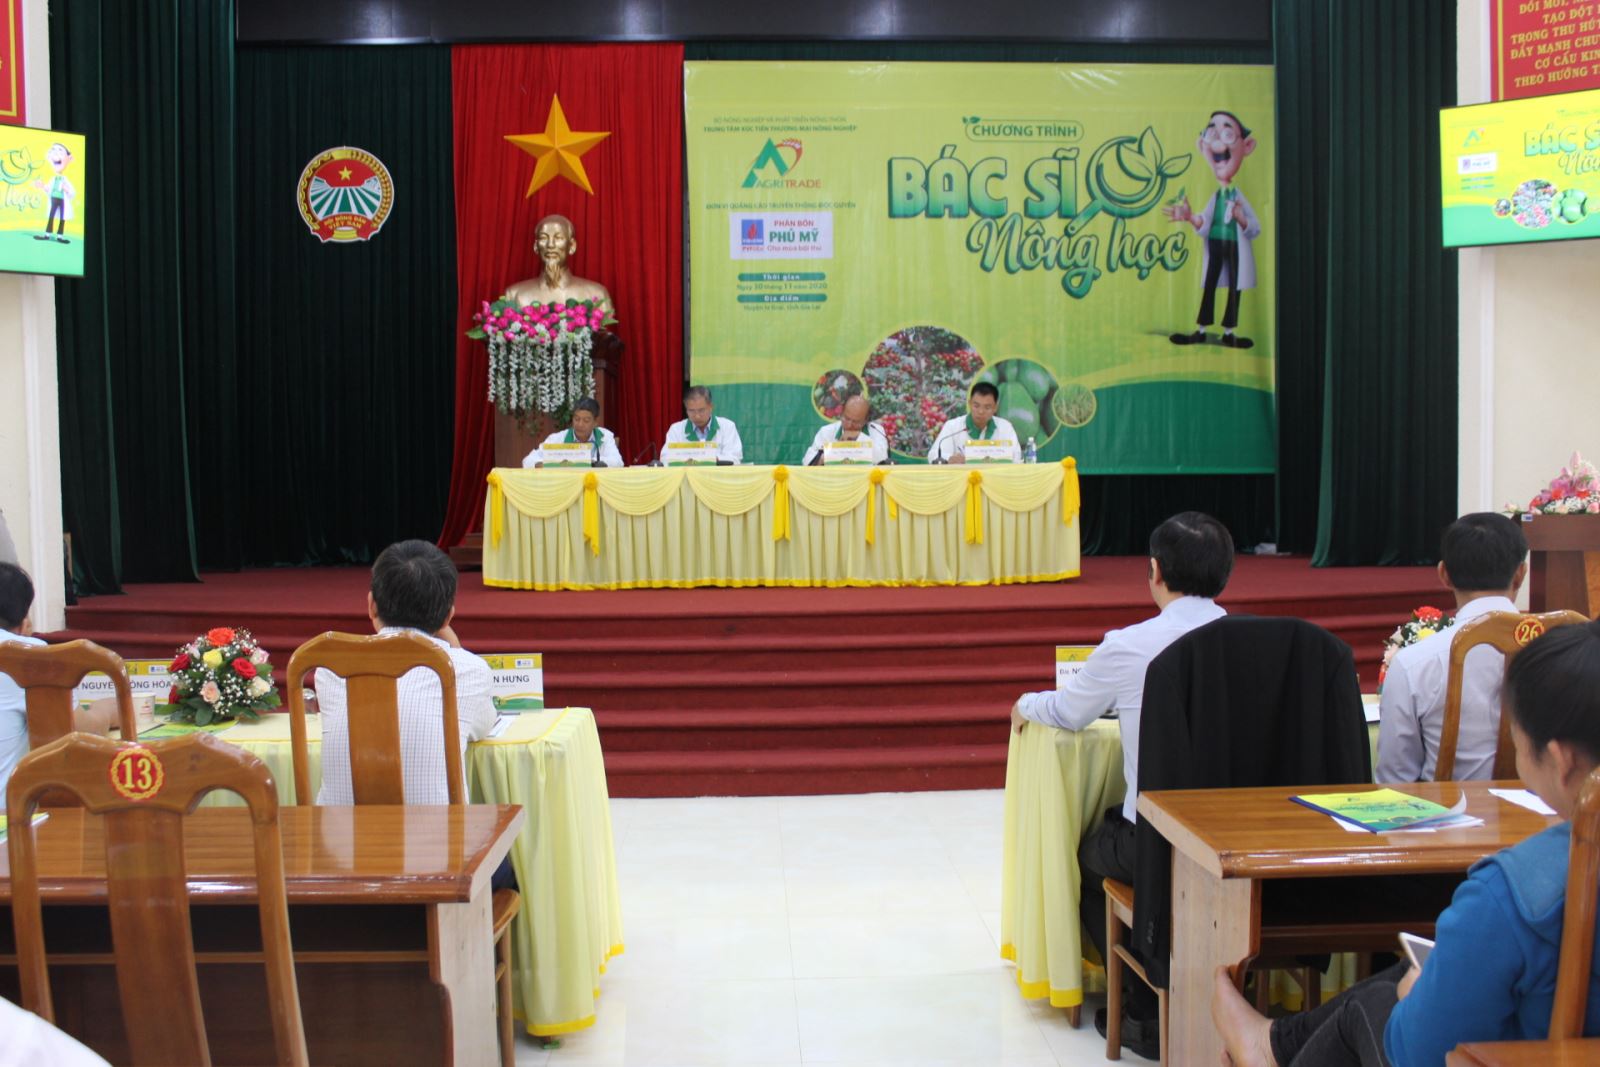 Article Hơn 300 nông dân tham gia chương trình “Bác sĩ nông học”